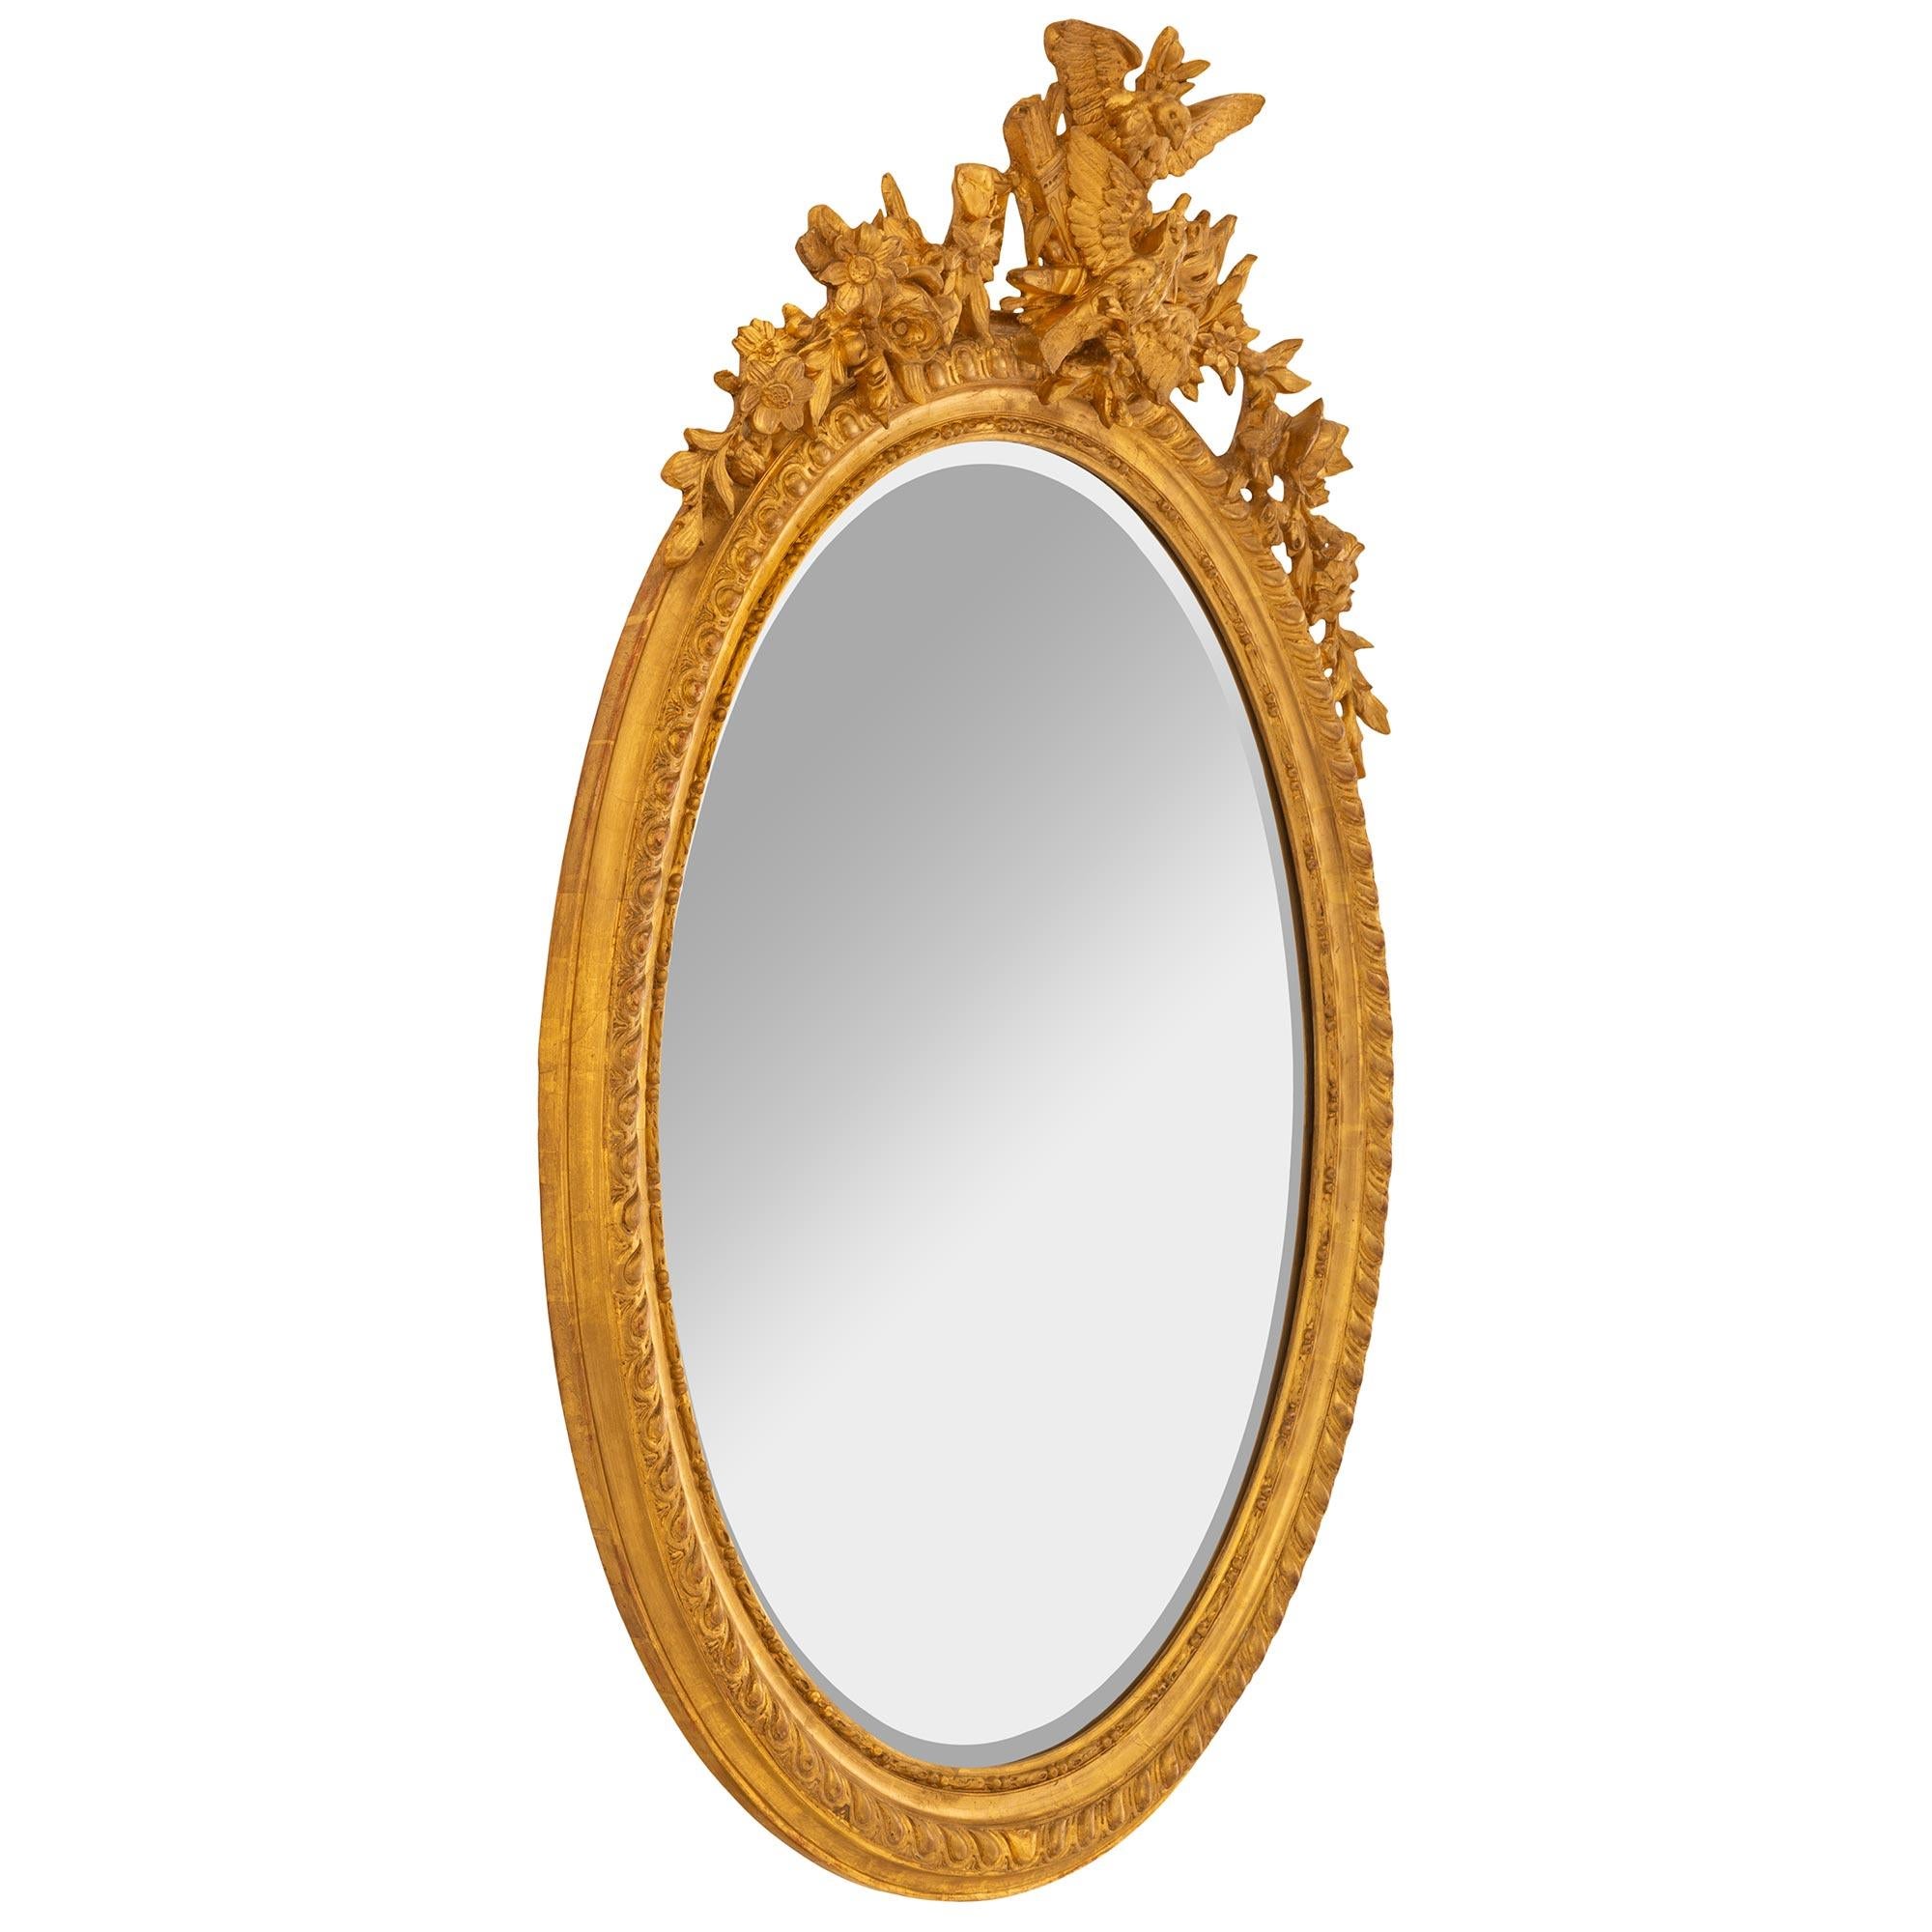 Très élégant miroir ovale en bois doré de style Louis XVI du XIXe siècle. La plaque de miroir est encadrée d'une jolie bordure perlée et mouchetée. Le bord est orné d'un fin motif de godrons torsadés qui se prolonge sur tout le cadre. Ci-dessus, la